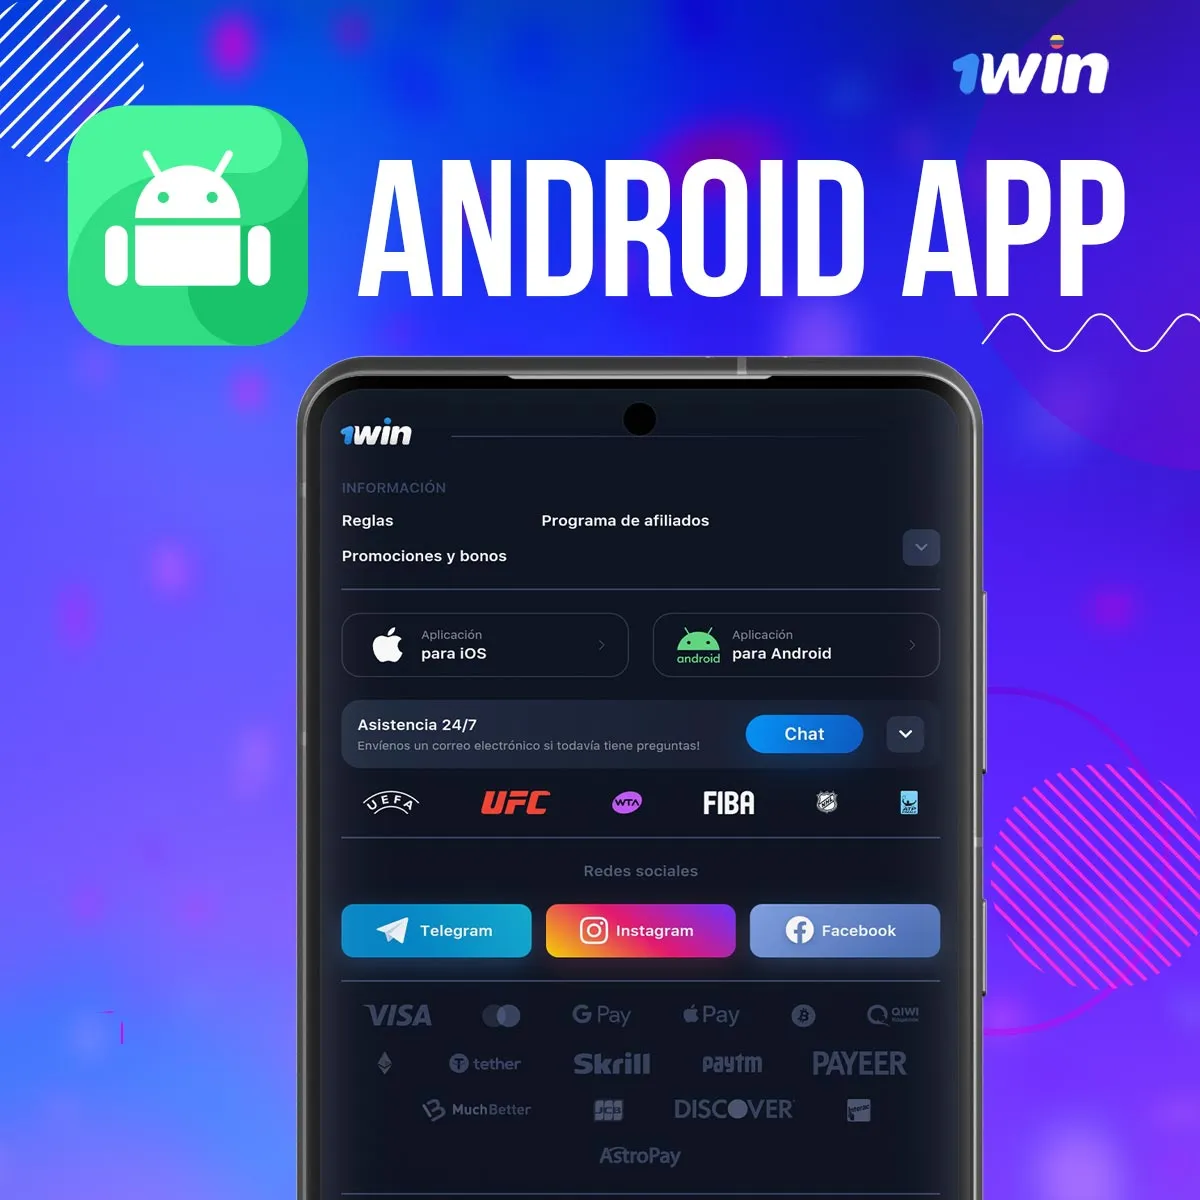 Instrucciones paso a paso para descargar la app móvil de 1win para android